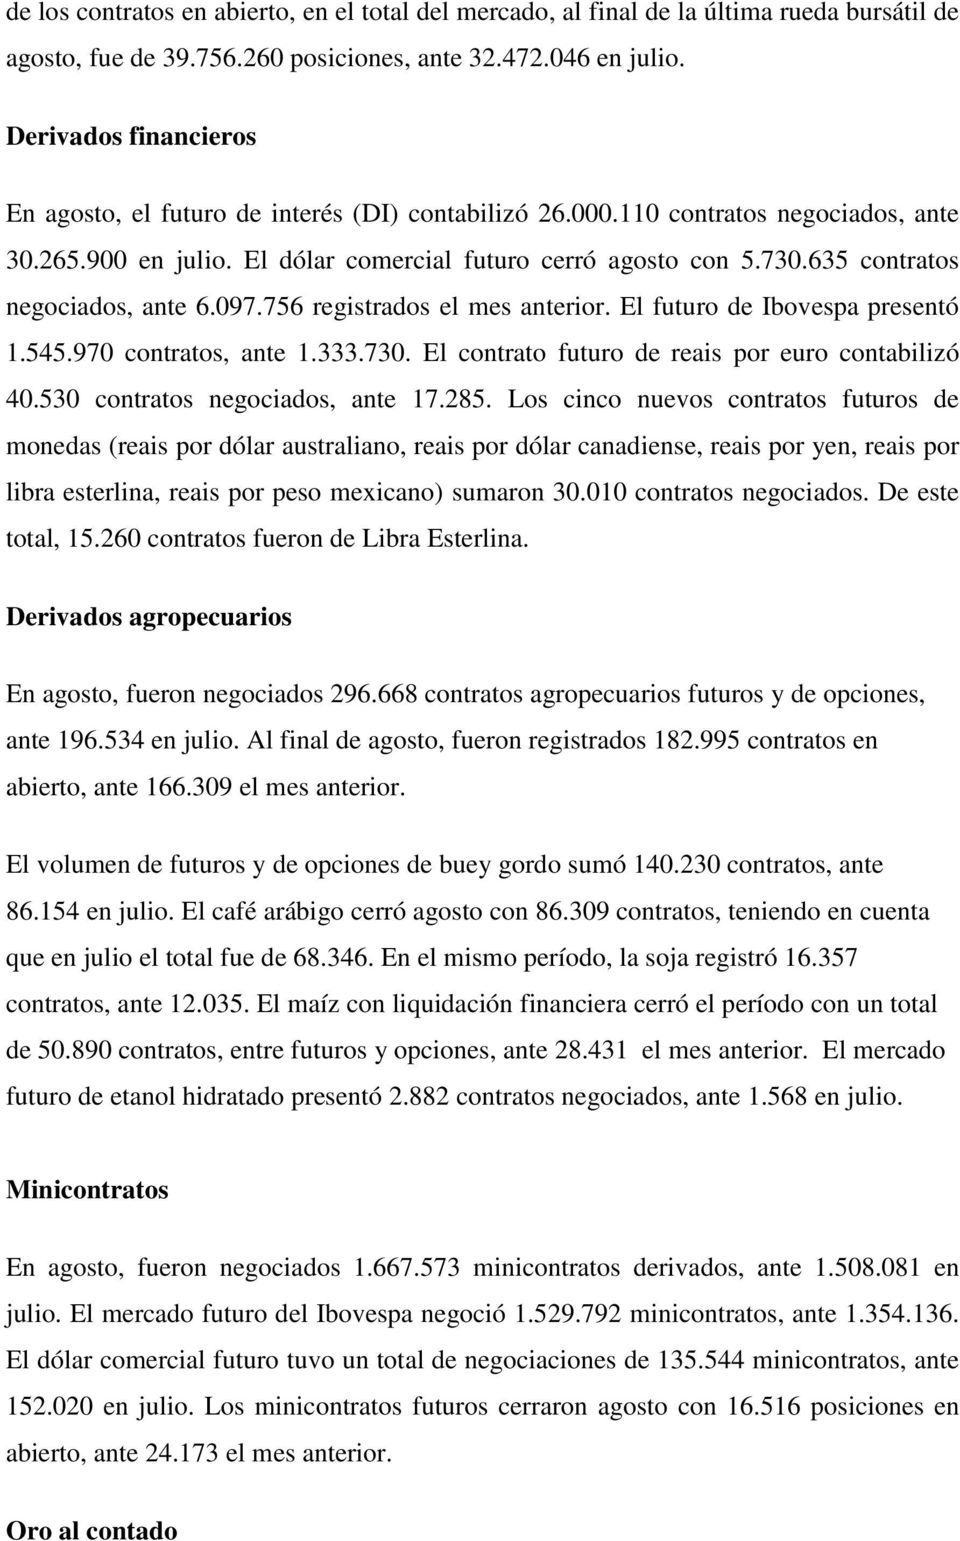 635 contratos negociados, ante 6.097.756 registrados el mes anterior. El futuro de Ibovespa presentó 1.545.970 contratos, ante 1.333.730. El contrato futuro de reais por euro contabilizó 40.